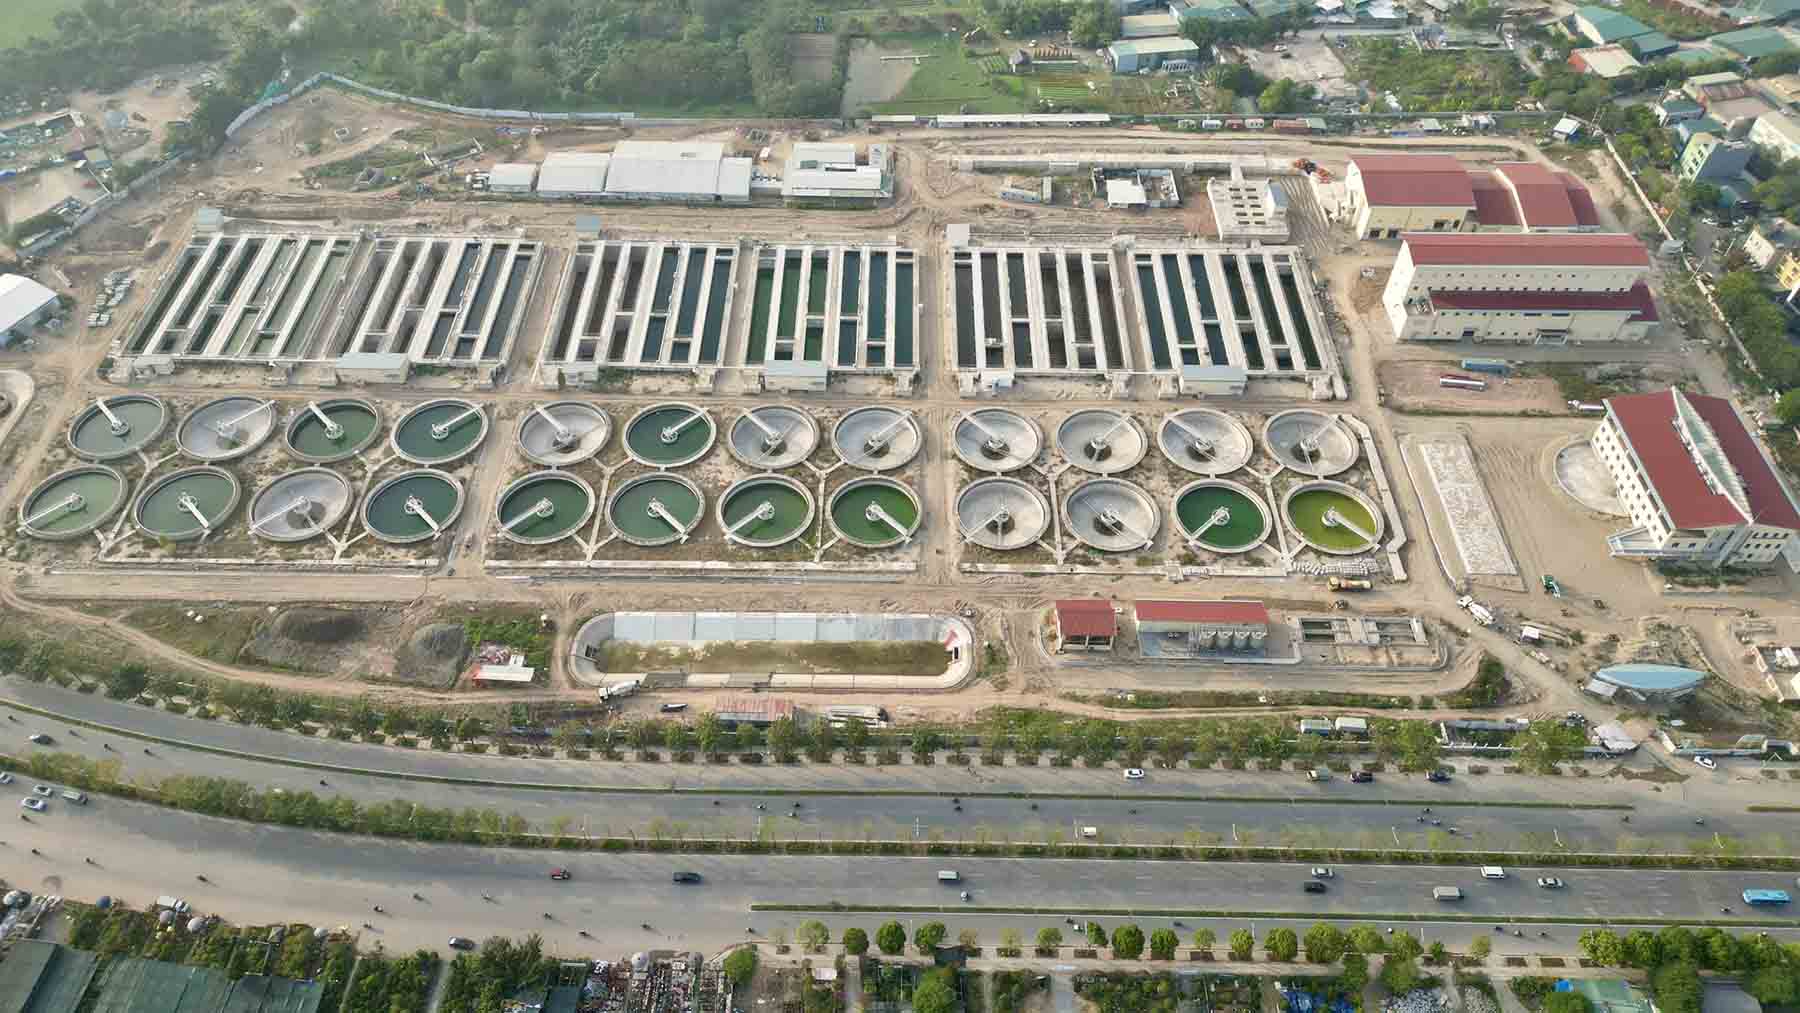 Nhà máy xử lý nước thải Yên Xá (xã Thịnh Liệt, huyện Thanh Trì) khởi công xây dựng tháng 10/2016 với công suất 270.000 m3 nước thải sinh hoạt mỗi ngày. Dự án sử dụng vốn vay ODA của Nhật Bản (JICA) với tổng mức đầu tư hơn 16.000 tỷ đồng, trong đó vốn vay chiếm trên 84%.